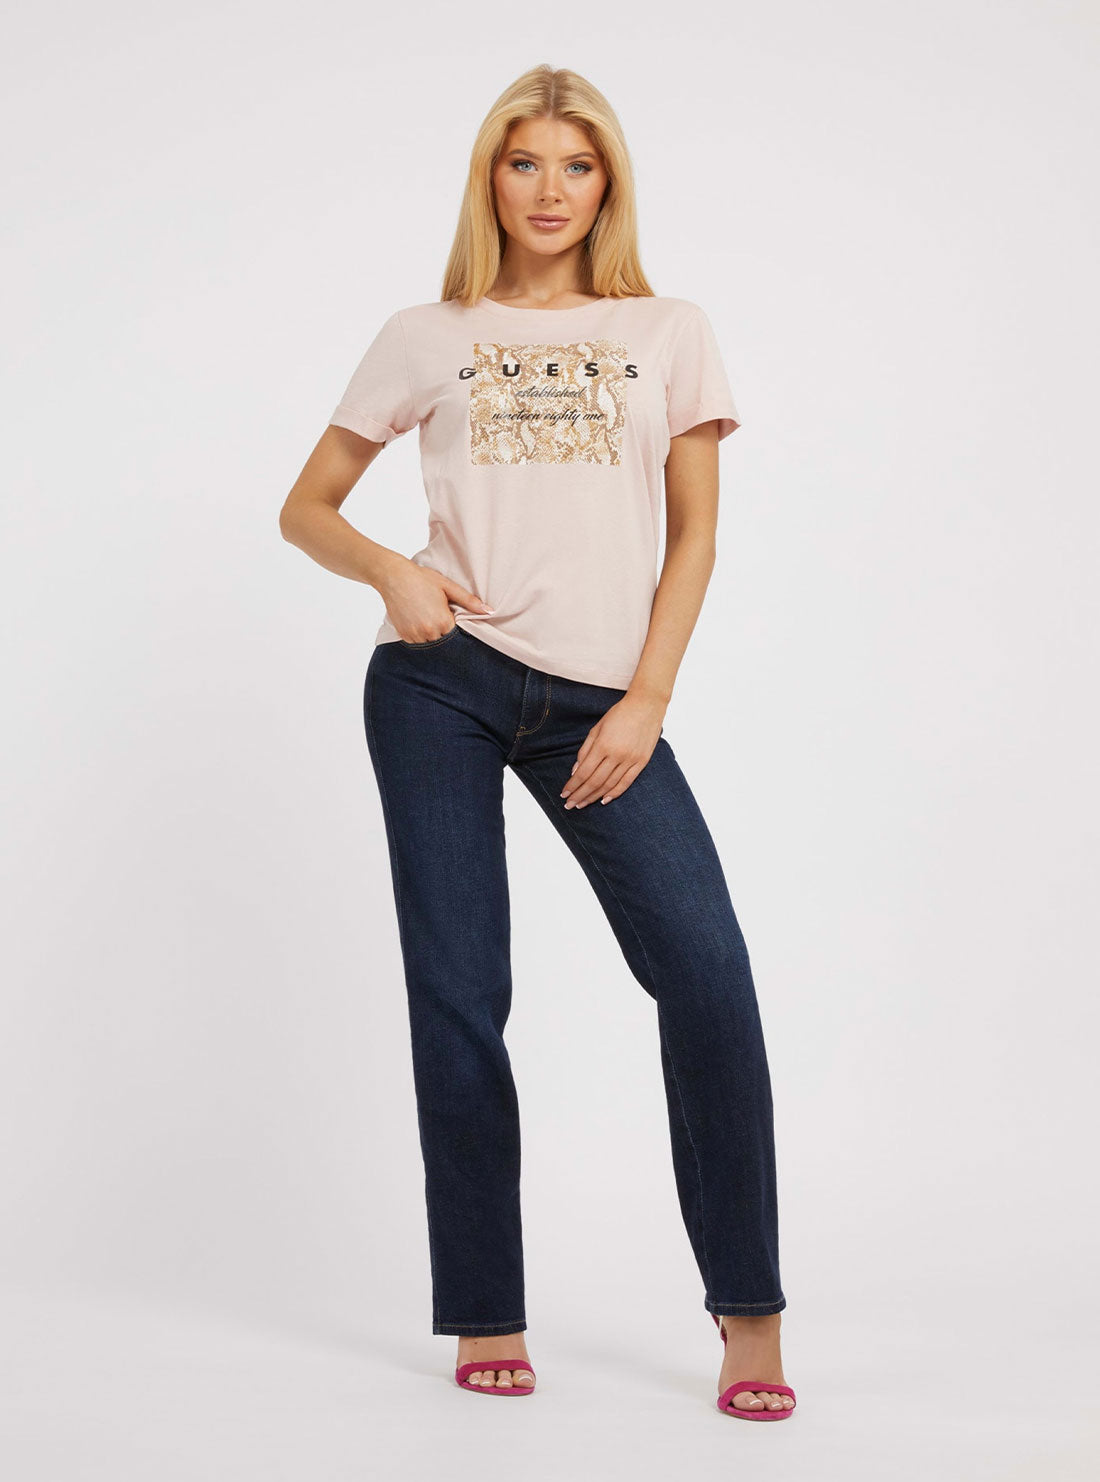 Light Pink Python Print T-Shirt | GUESS Women's Apparel | full view